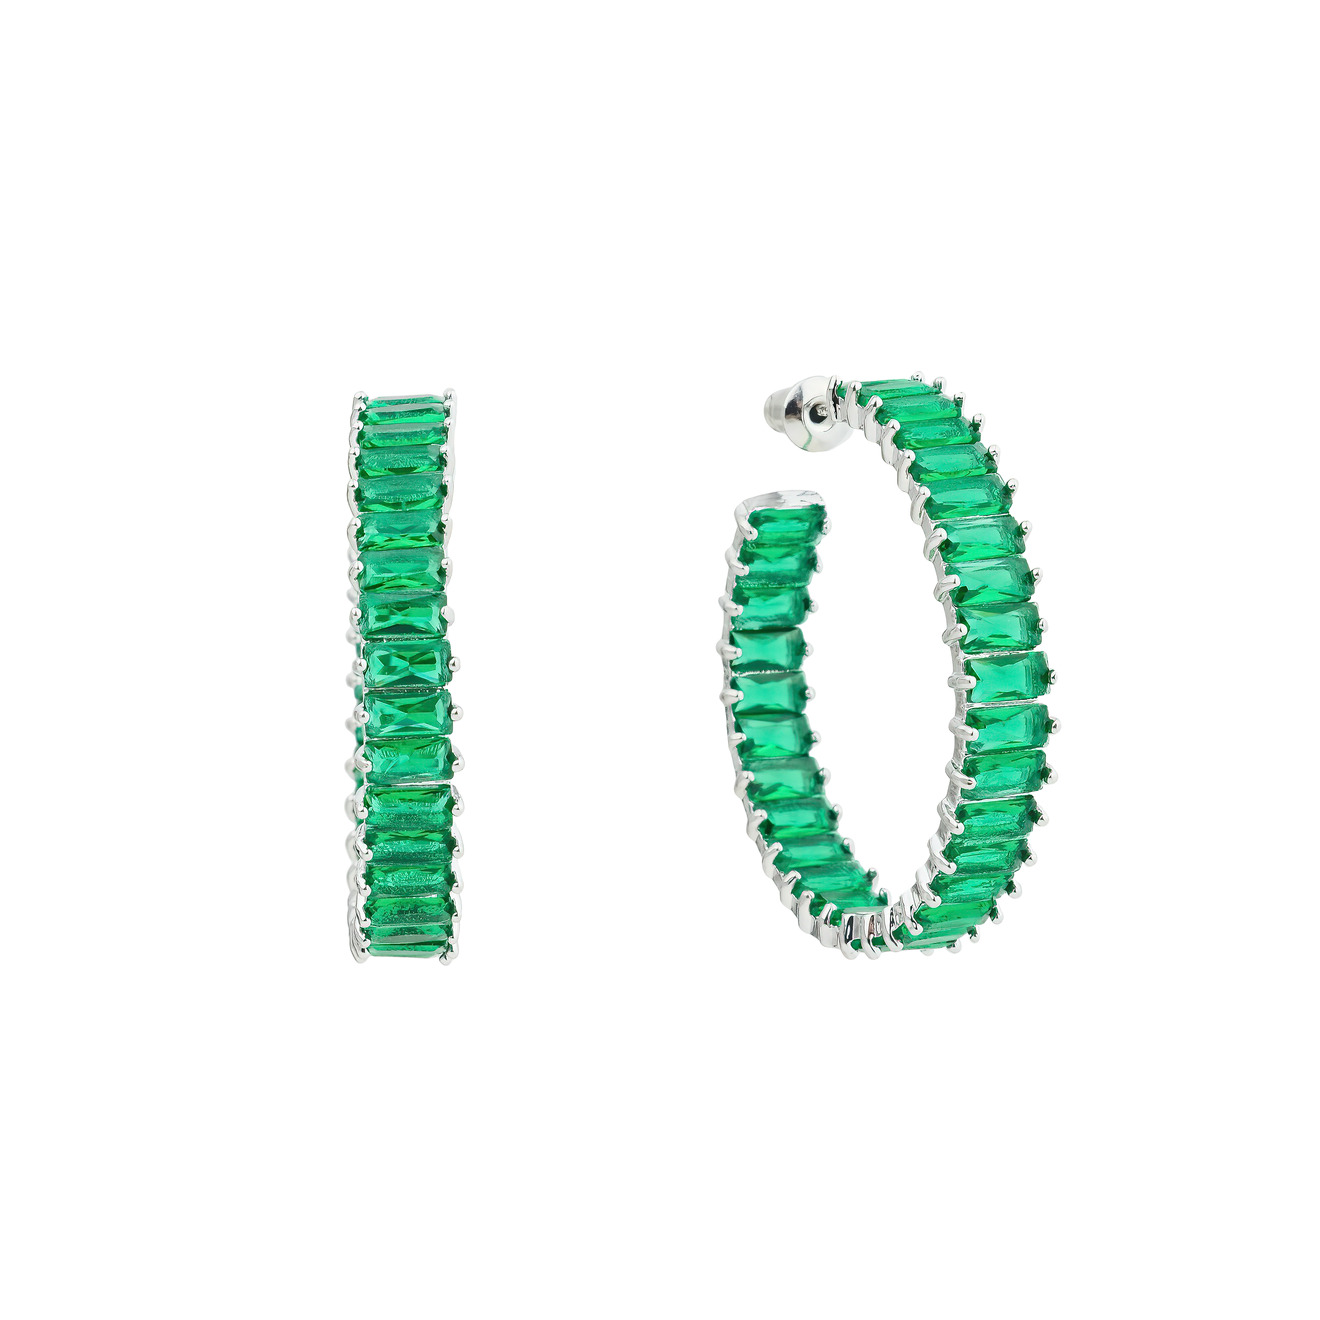 Herald Percy Серьги-кольца с зелеными кристаллами herald percy черненые серьги дуги с зелеными кристаллами